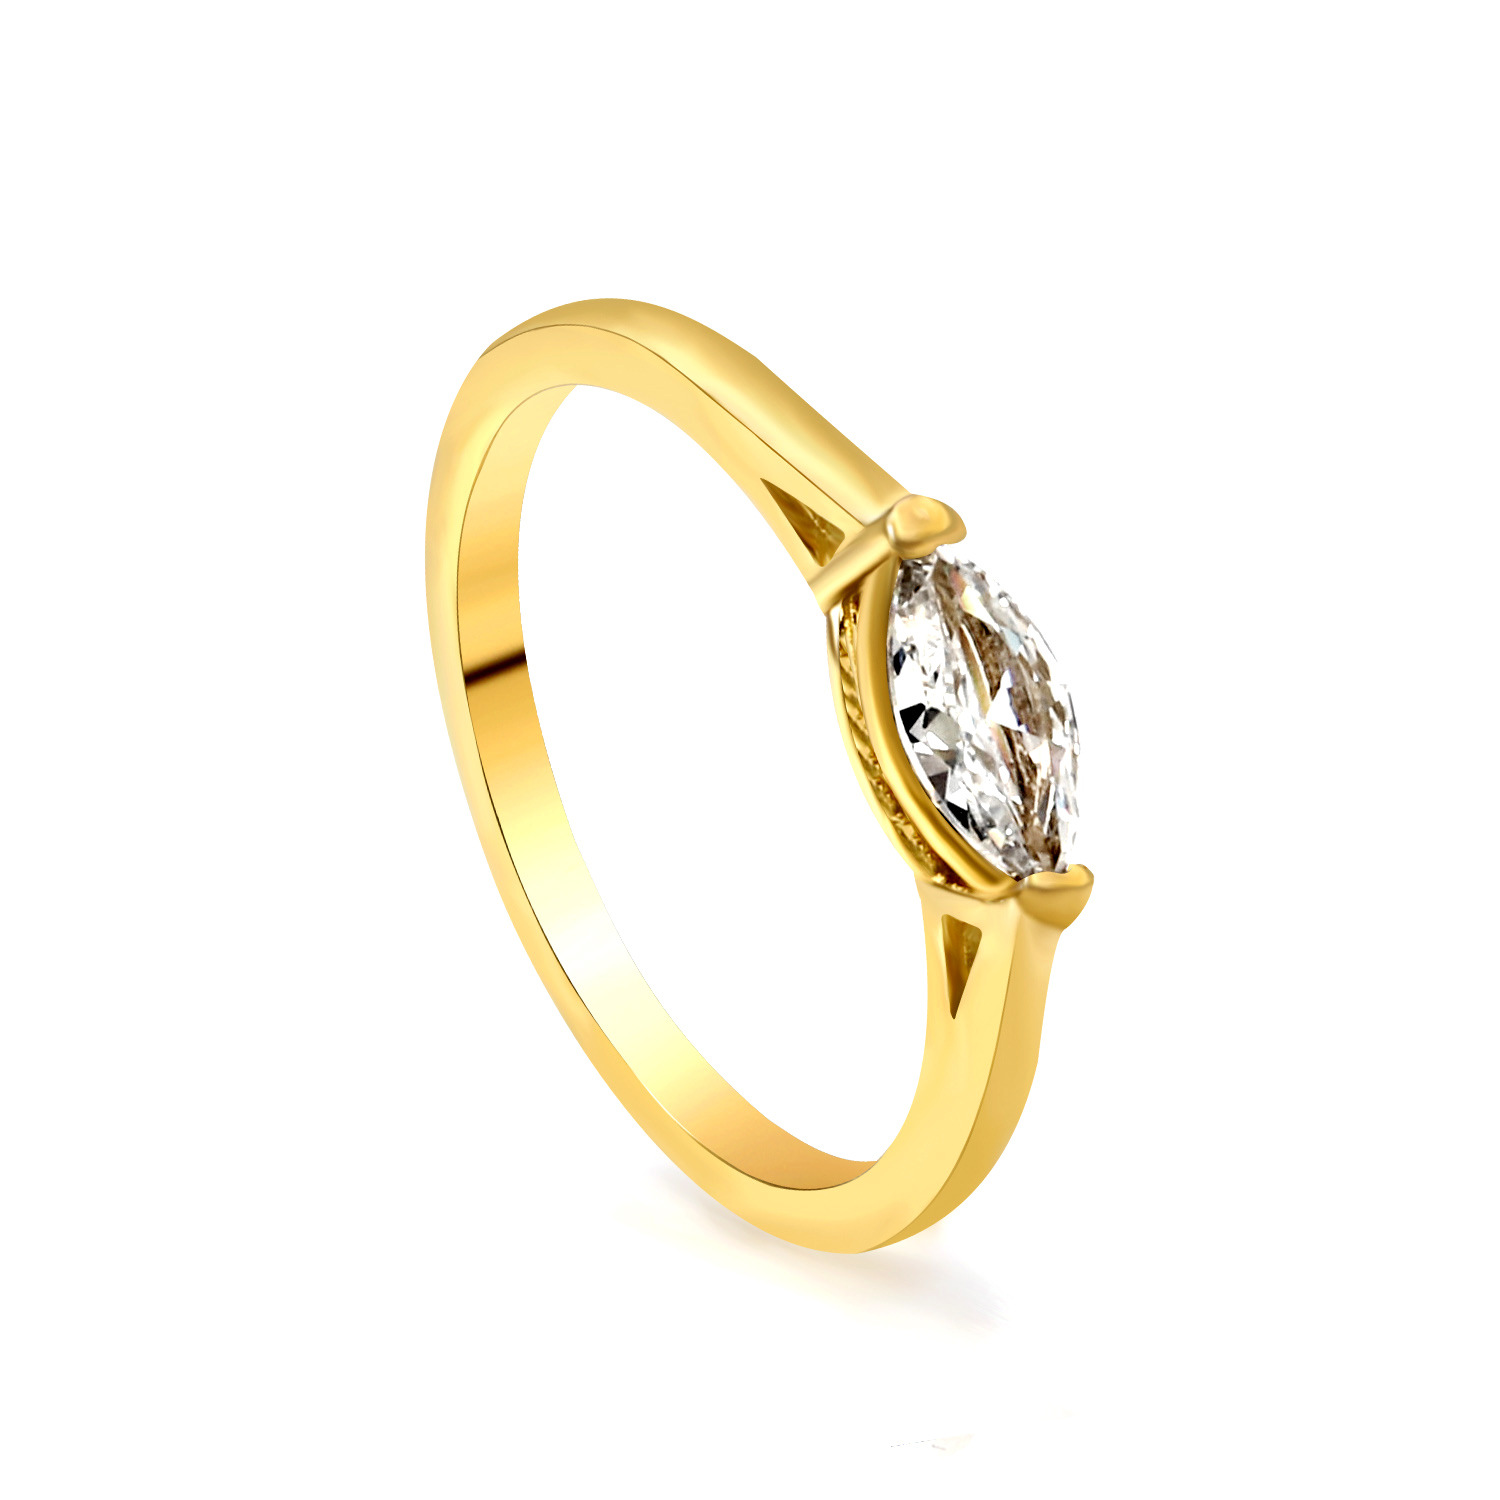 5:Gold and white diamond ring RI145106-9G